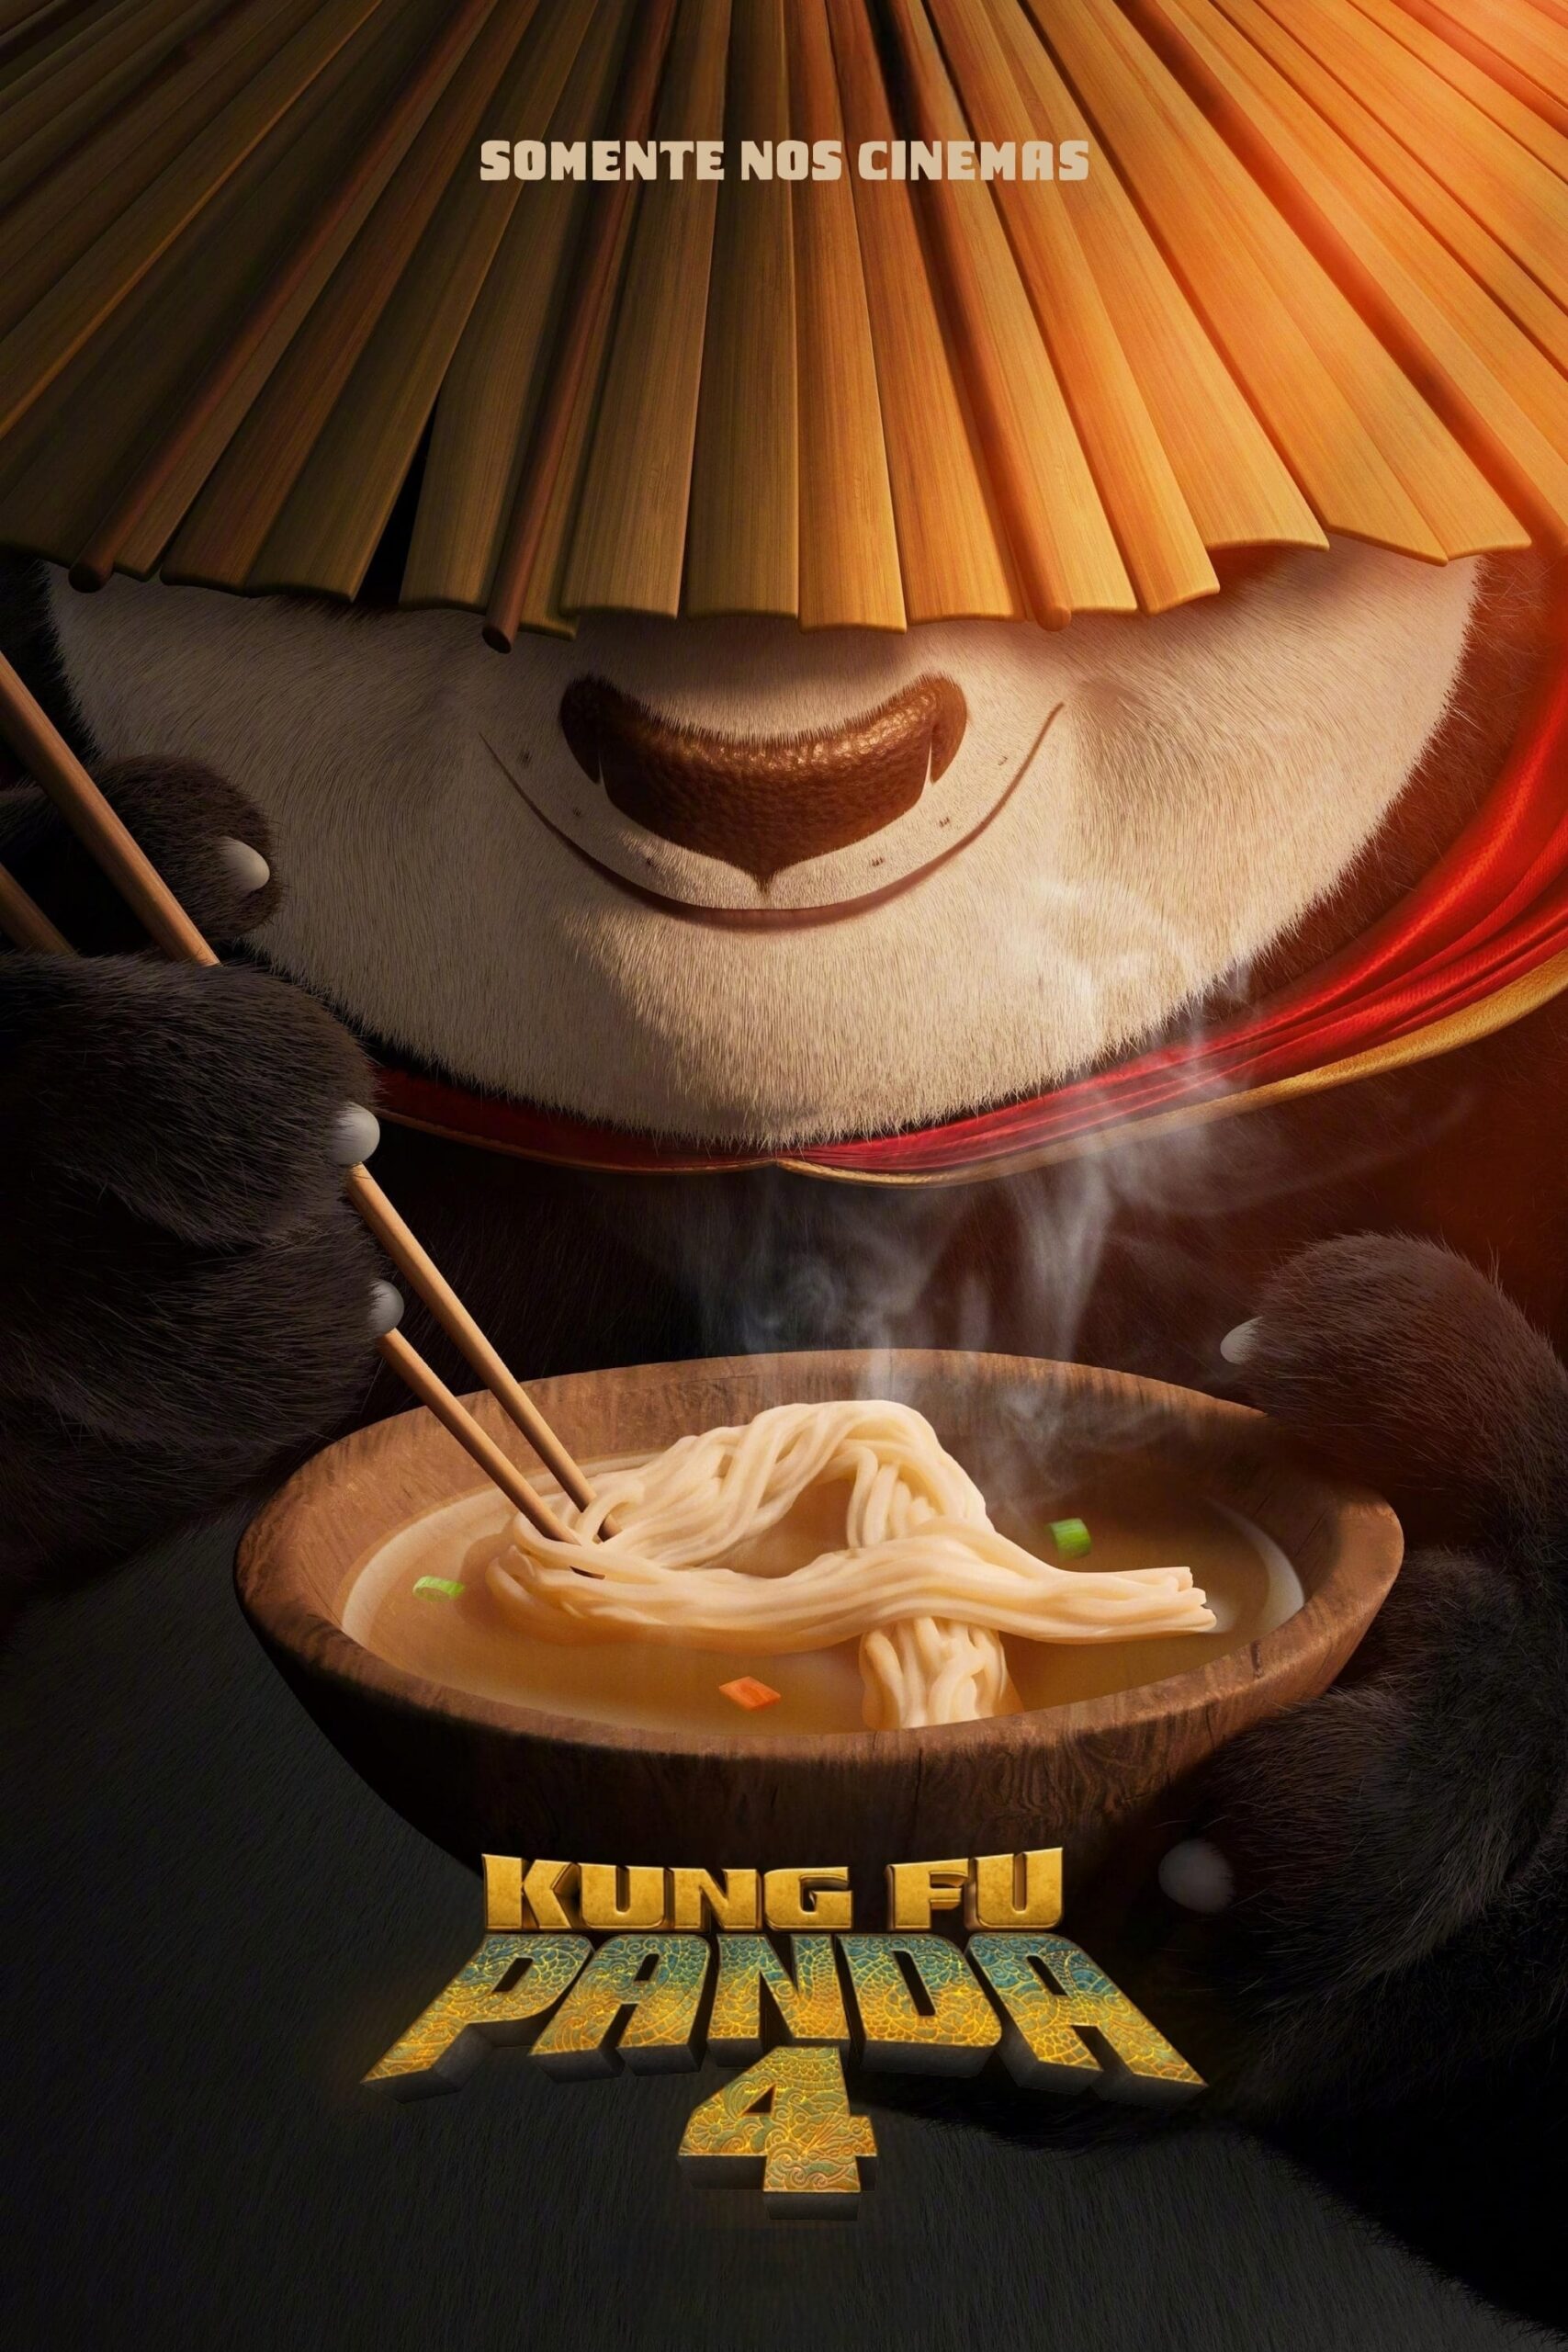 Poster do F=filme "Kung Fu Panda 4"